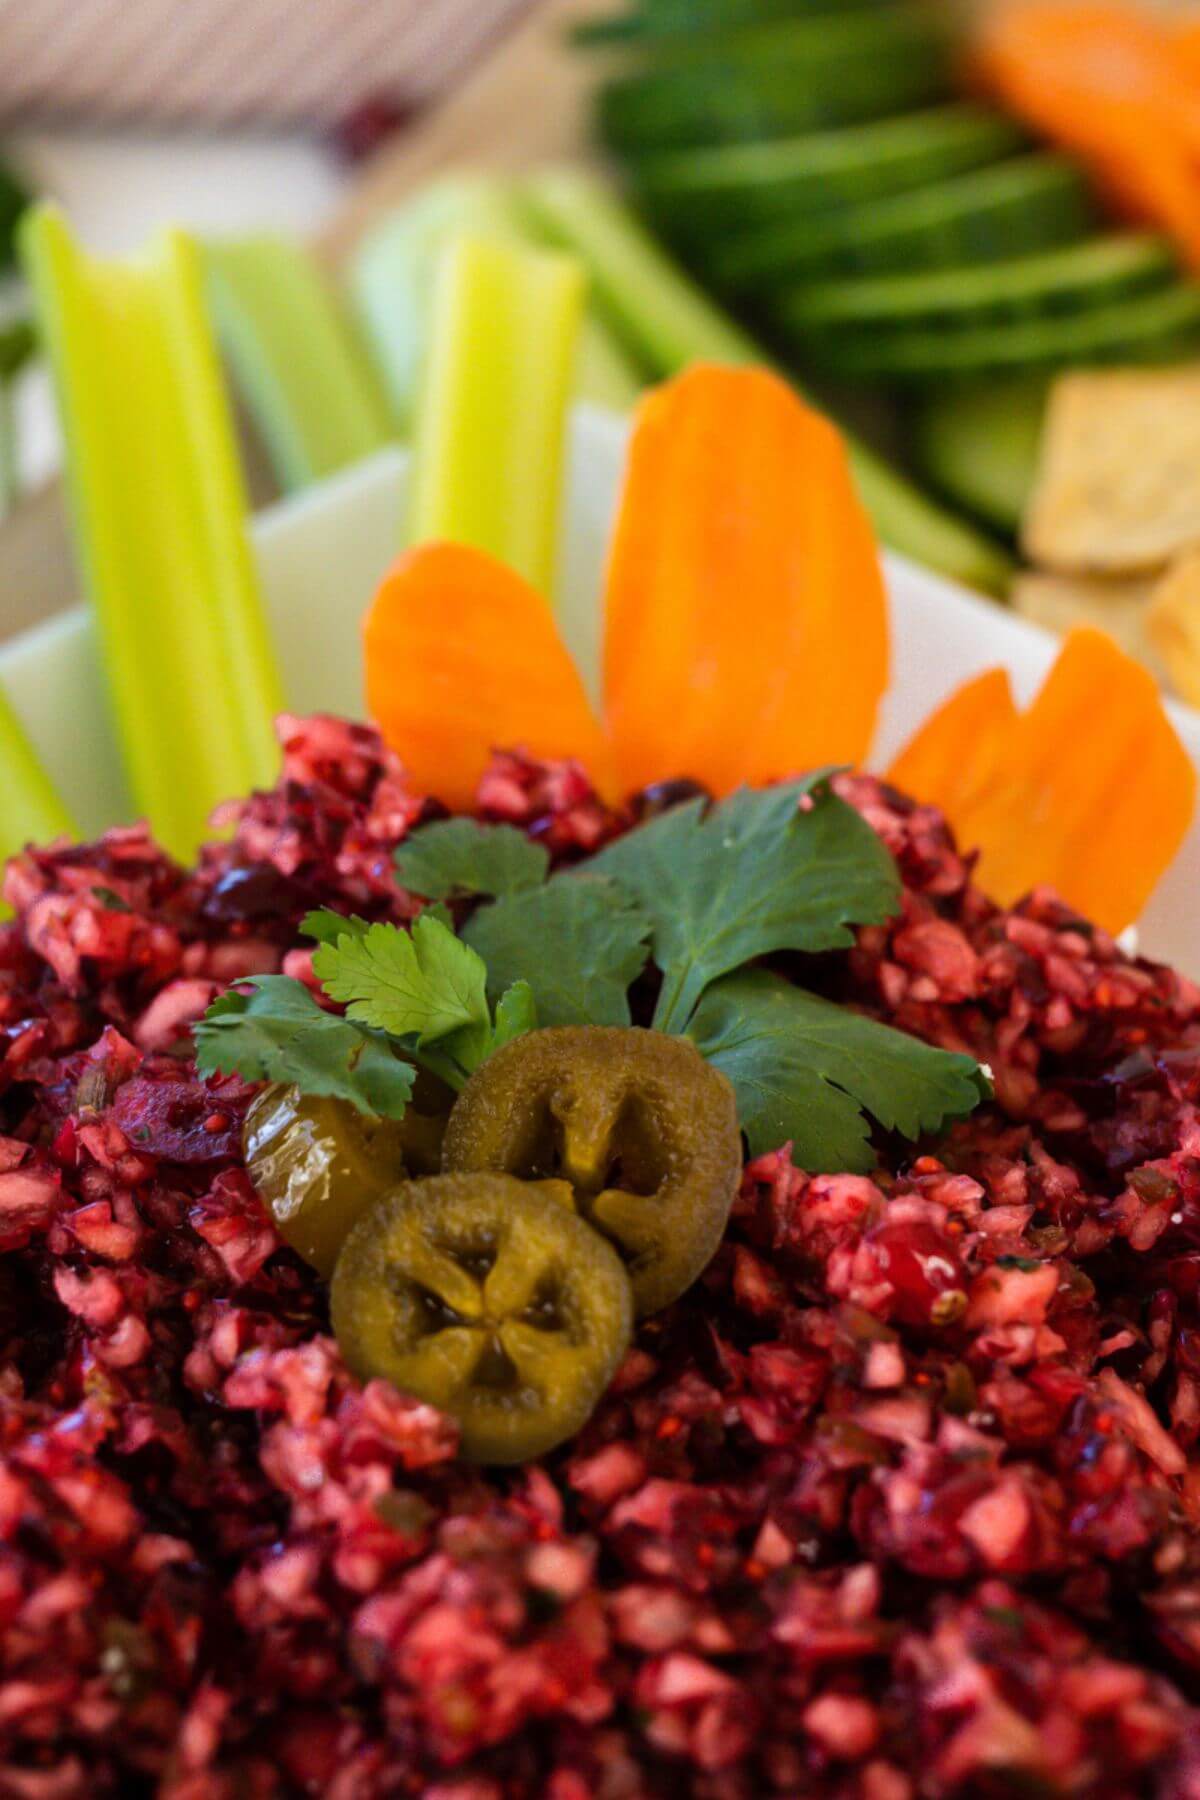 Cranberry dip is garnished with jalapenos alongside vegetables.